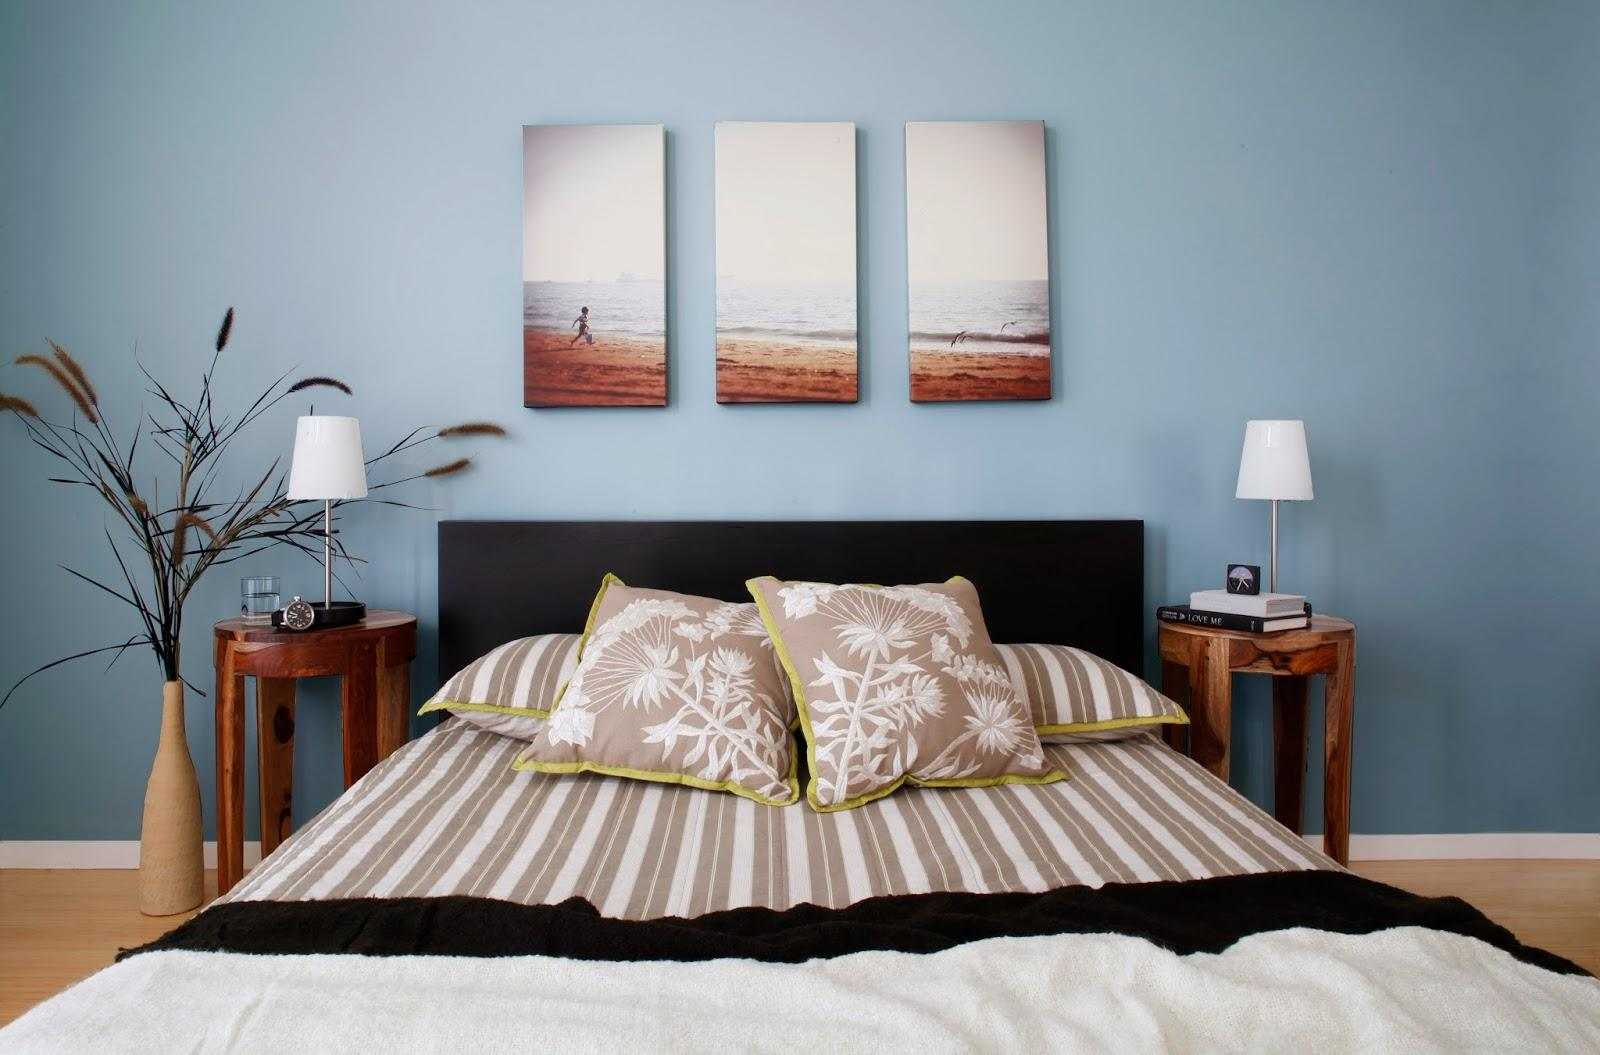 Что повесить над кроватью: 5 идеальных картин для спальни | многосна.ру | яндекс дзен